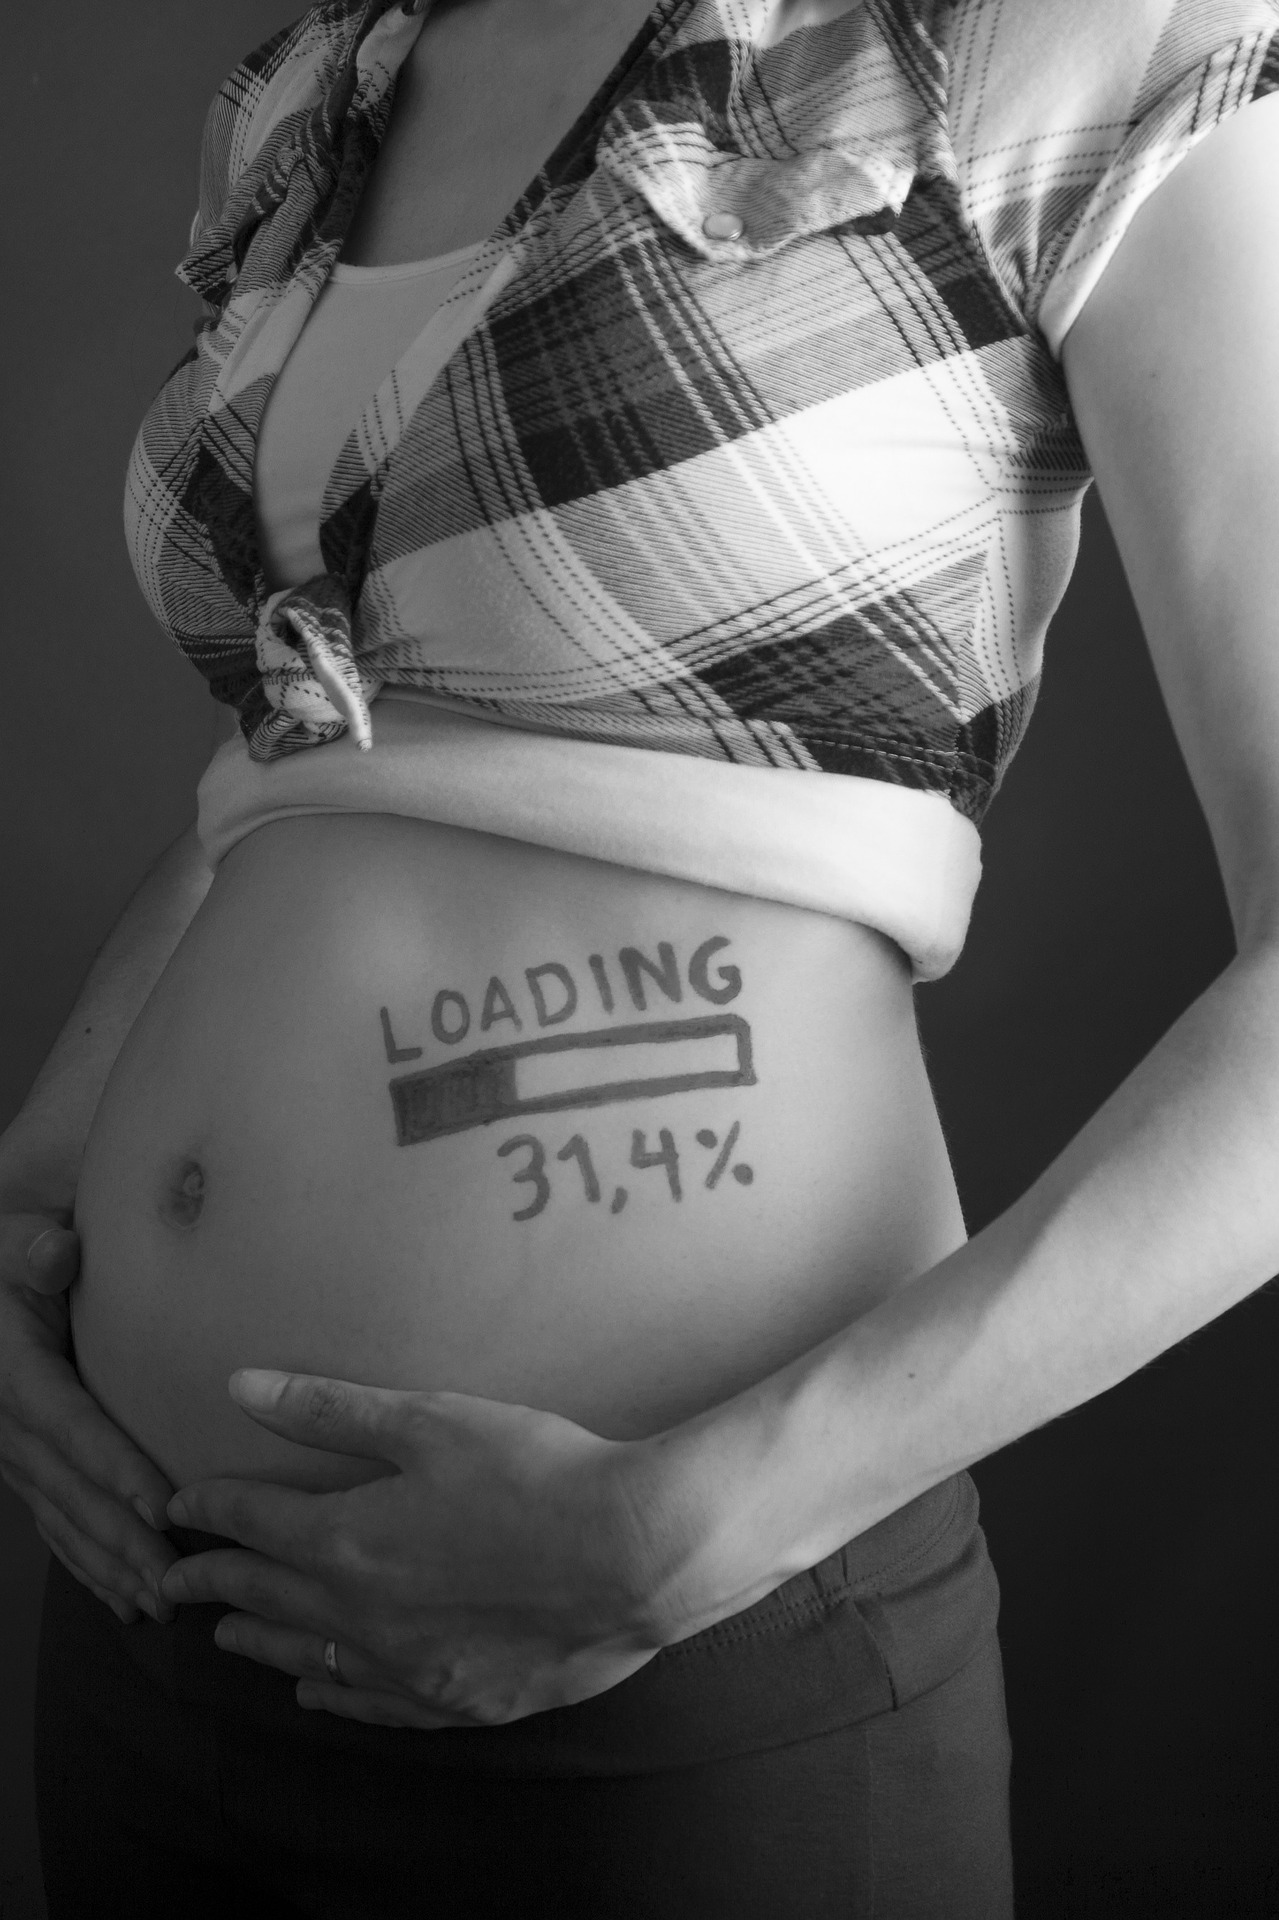 Diskriminierung wegen Schwangerschaft